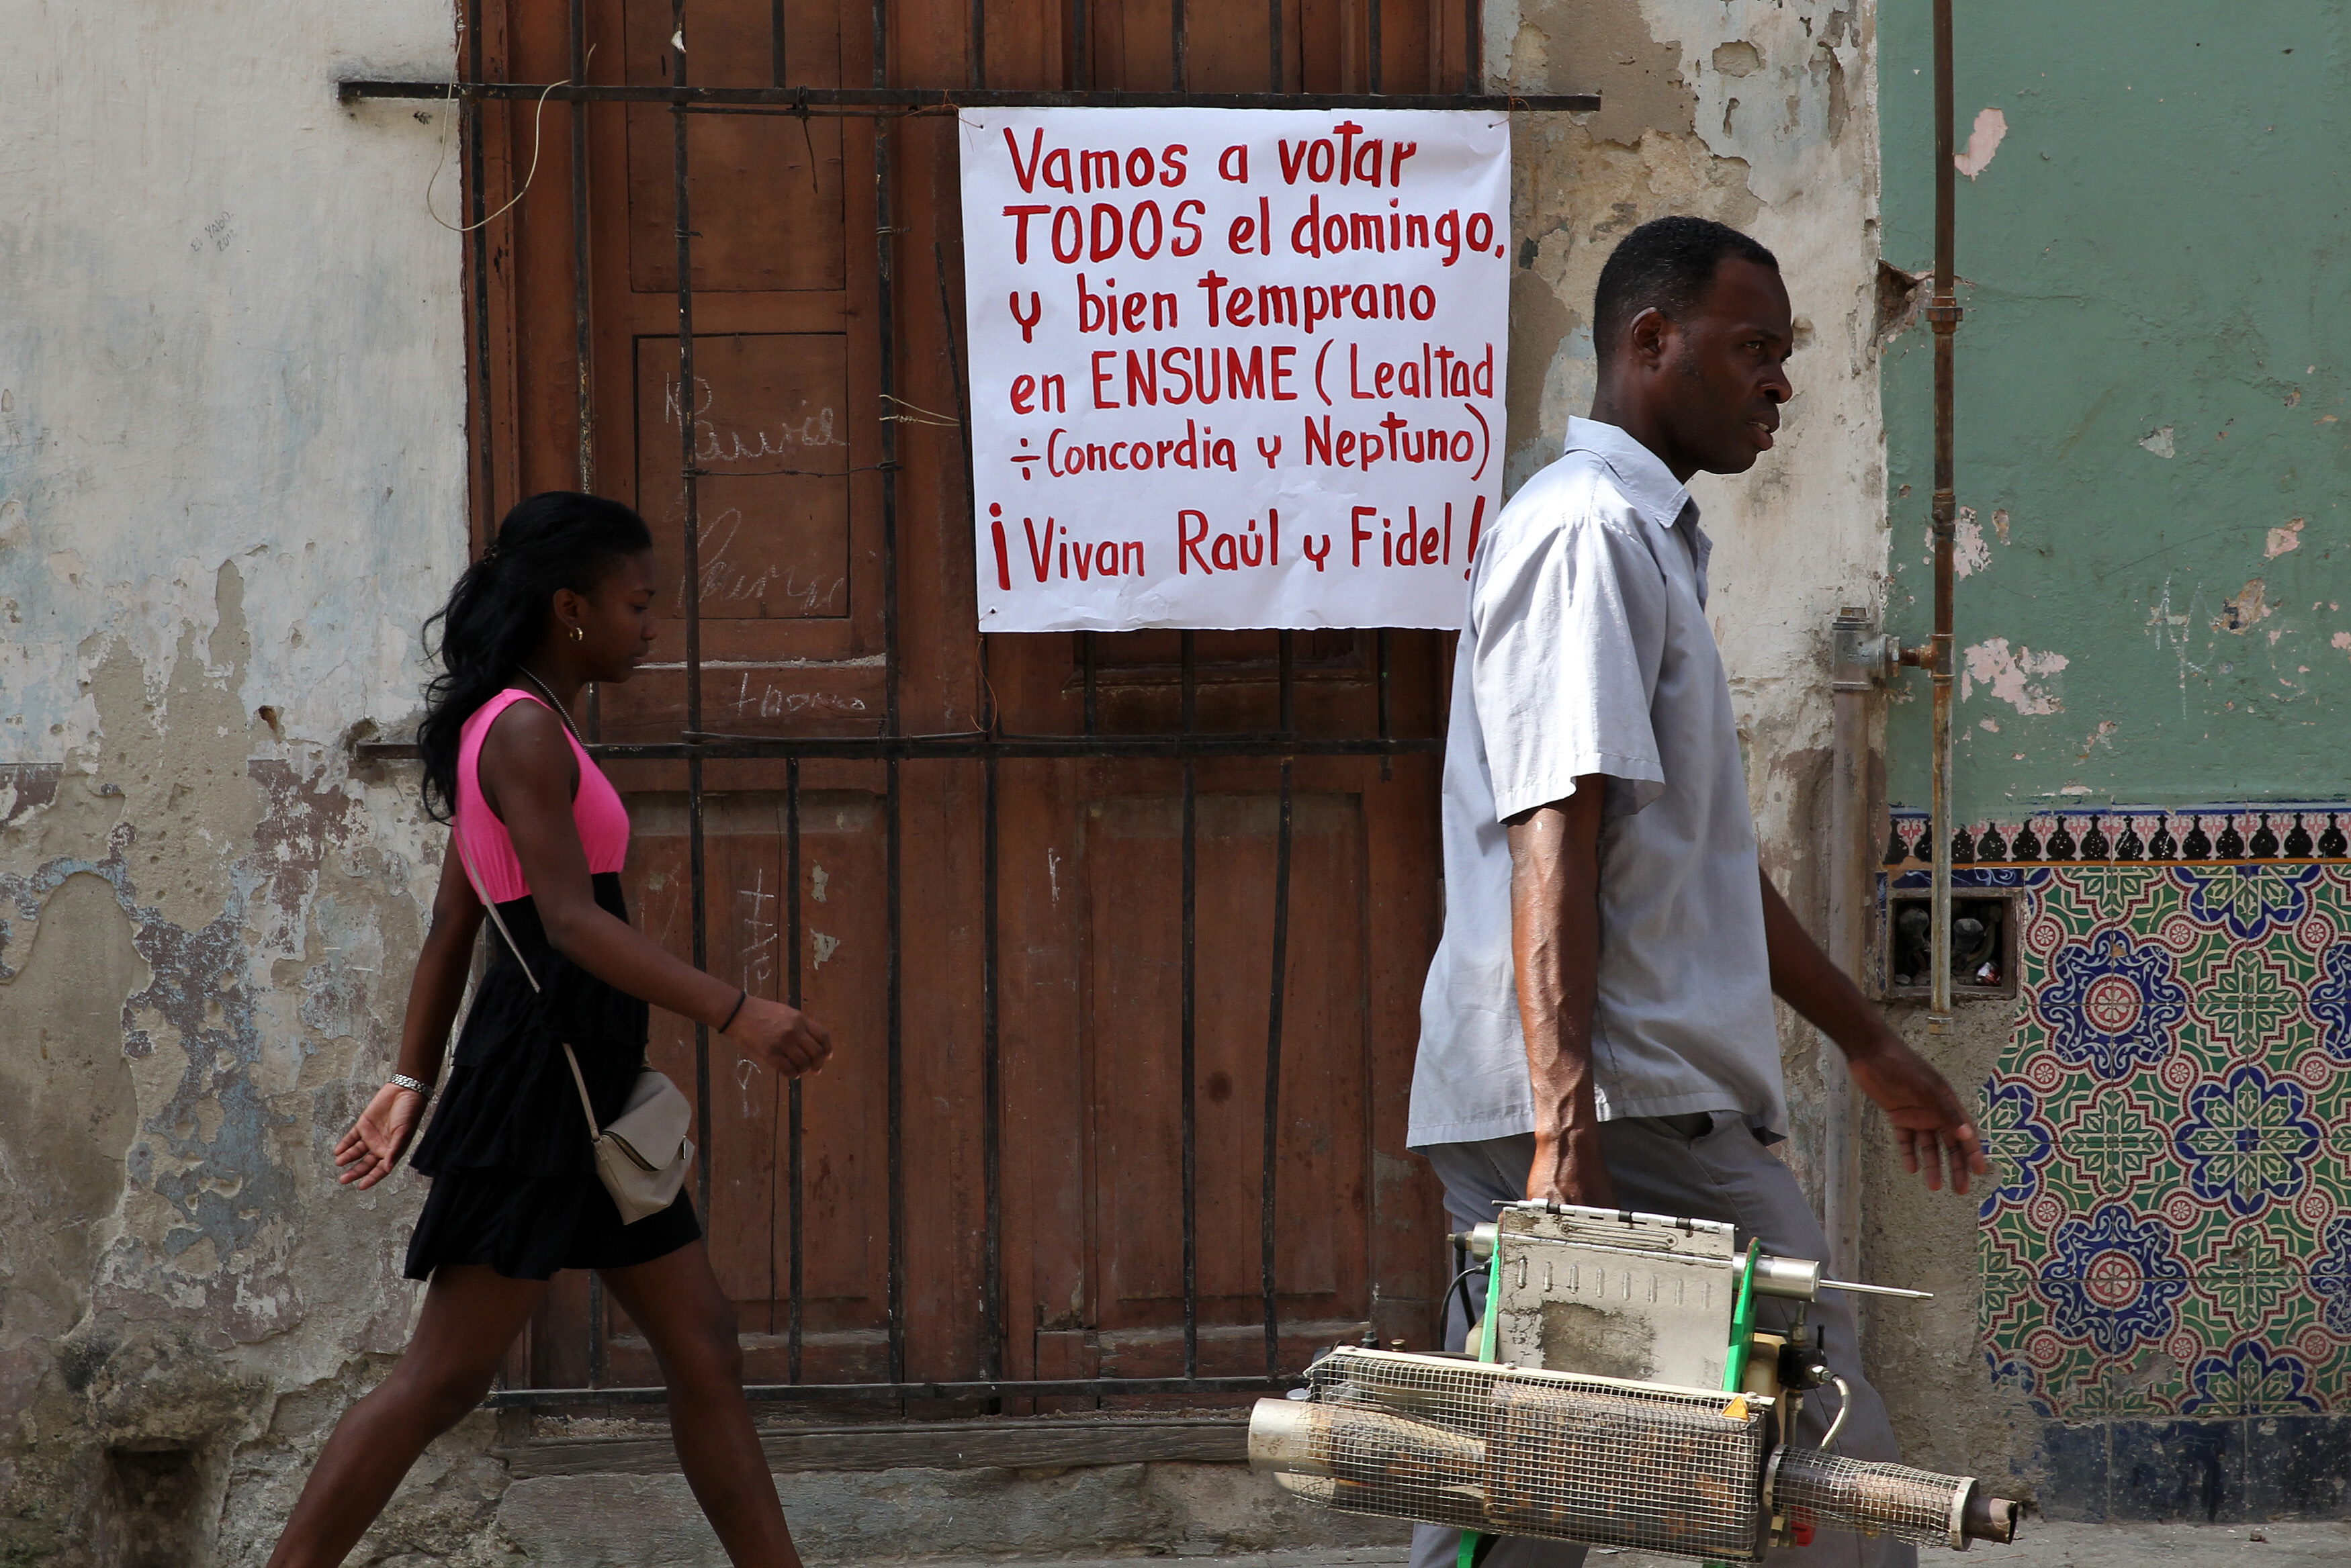 Cubanos votan en primeras elecciones municipales con candidatos opositores